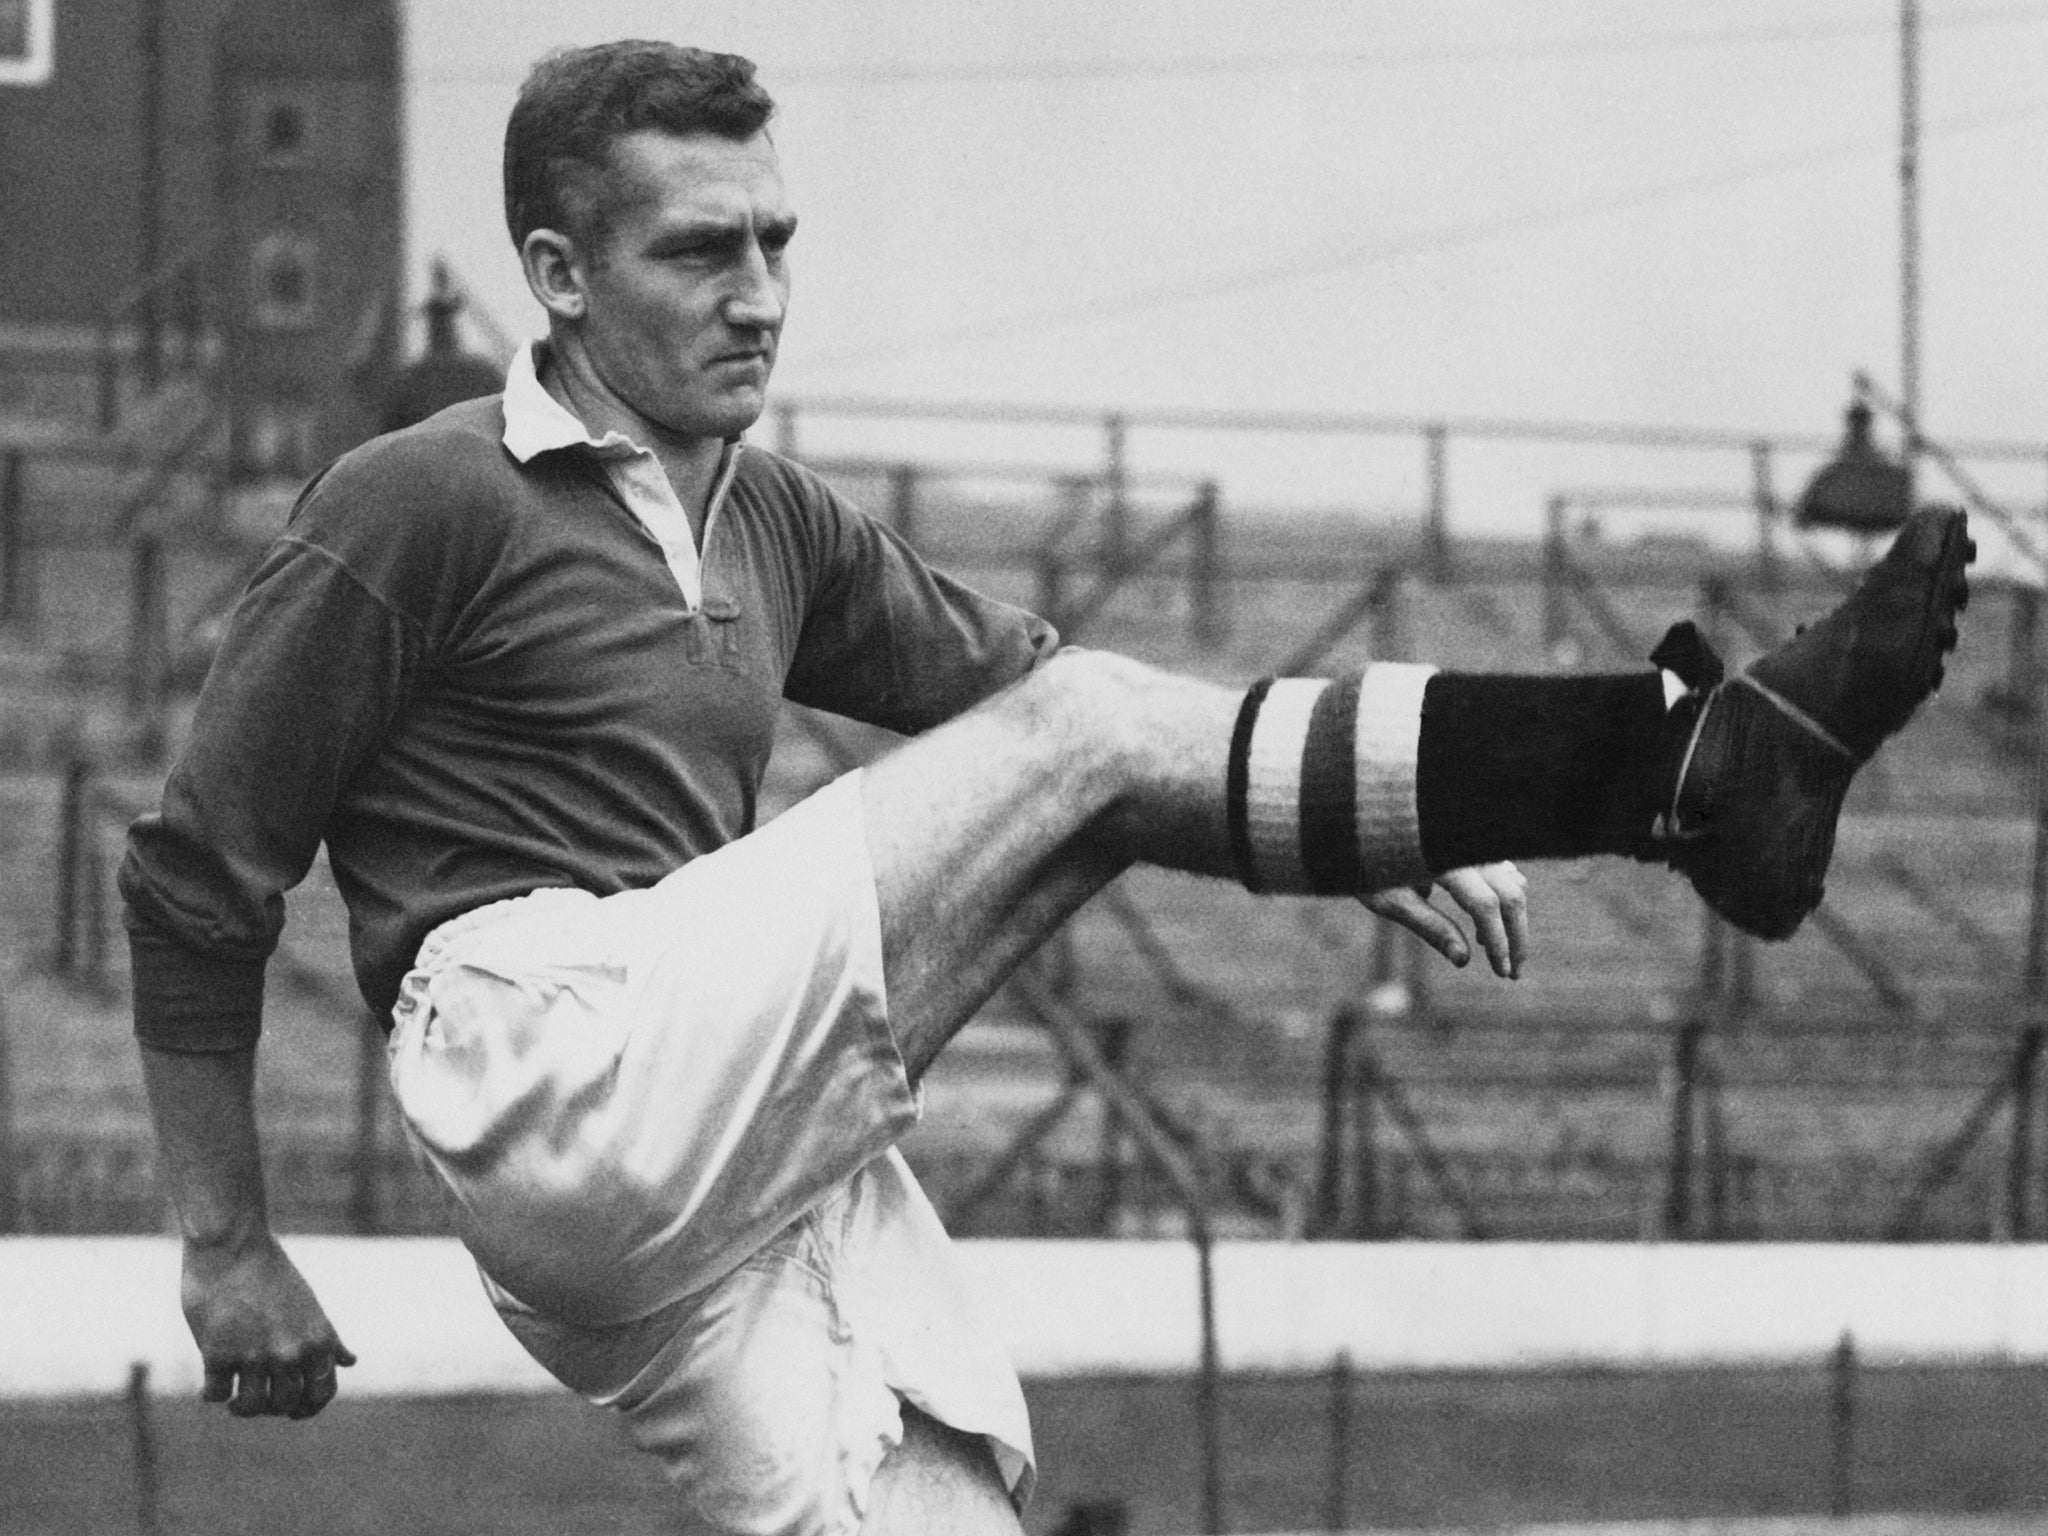 Bentley, pictured in 1953, scored nine goals between 1949 and 1955